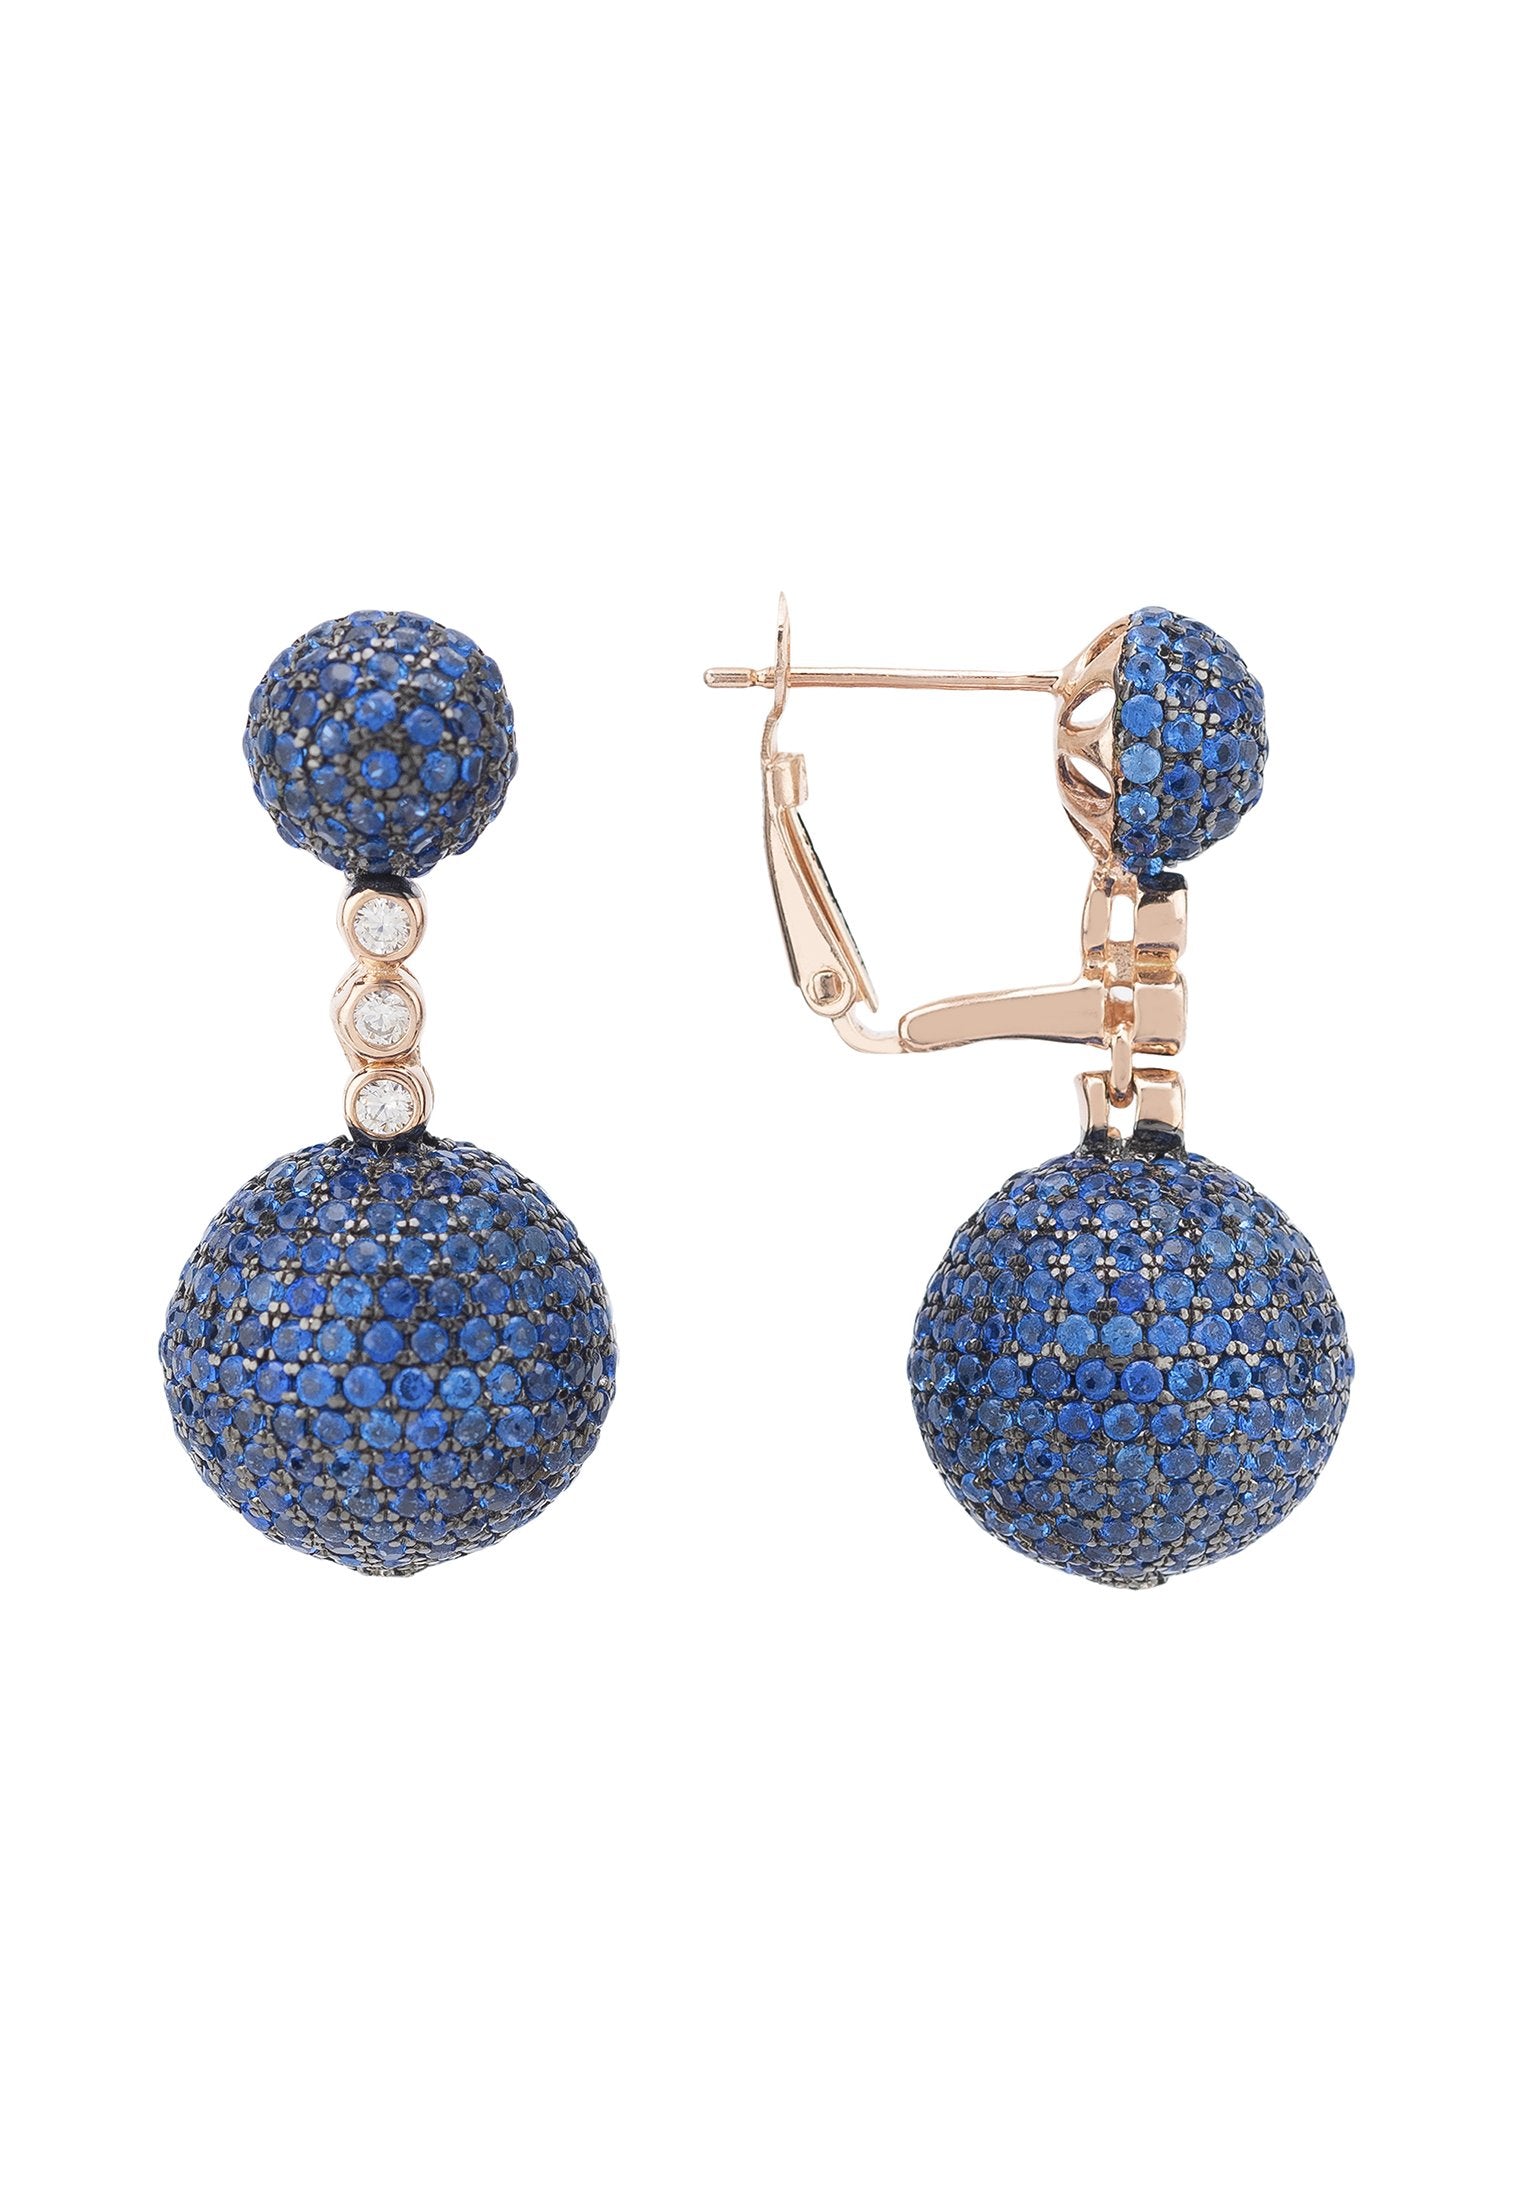 Monaco Sphere Drop Earrings Rosegold Sapphire Blue CZ